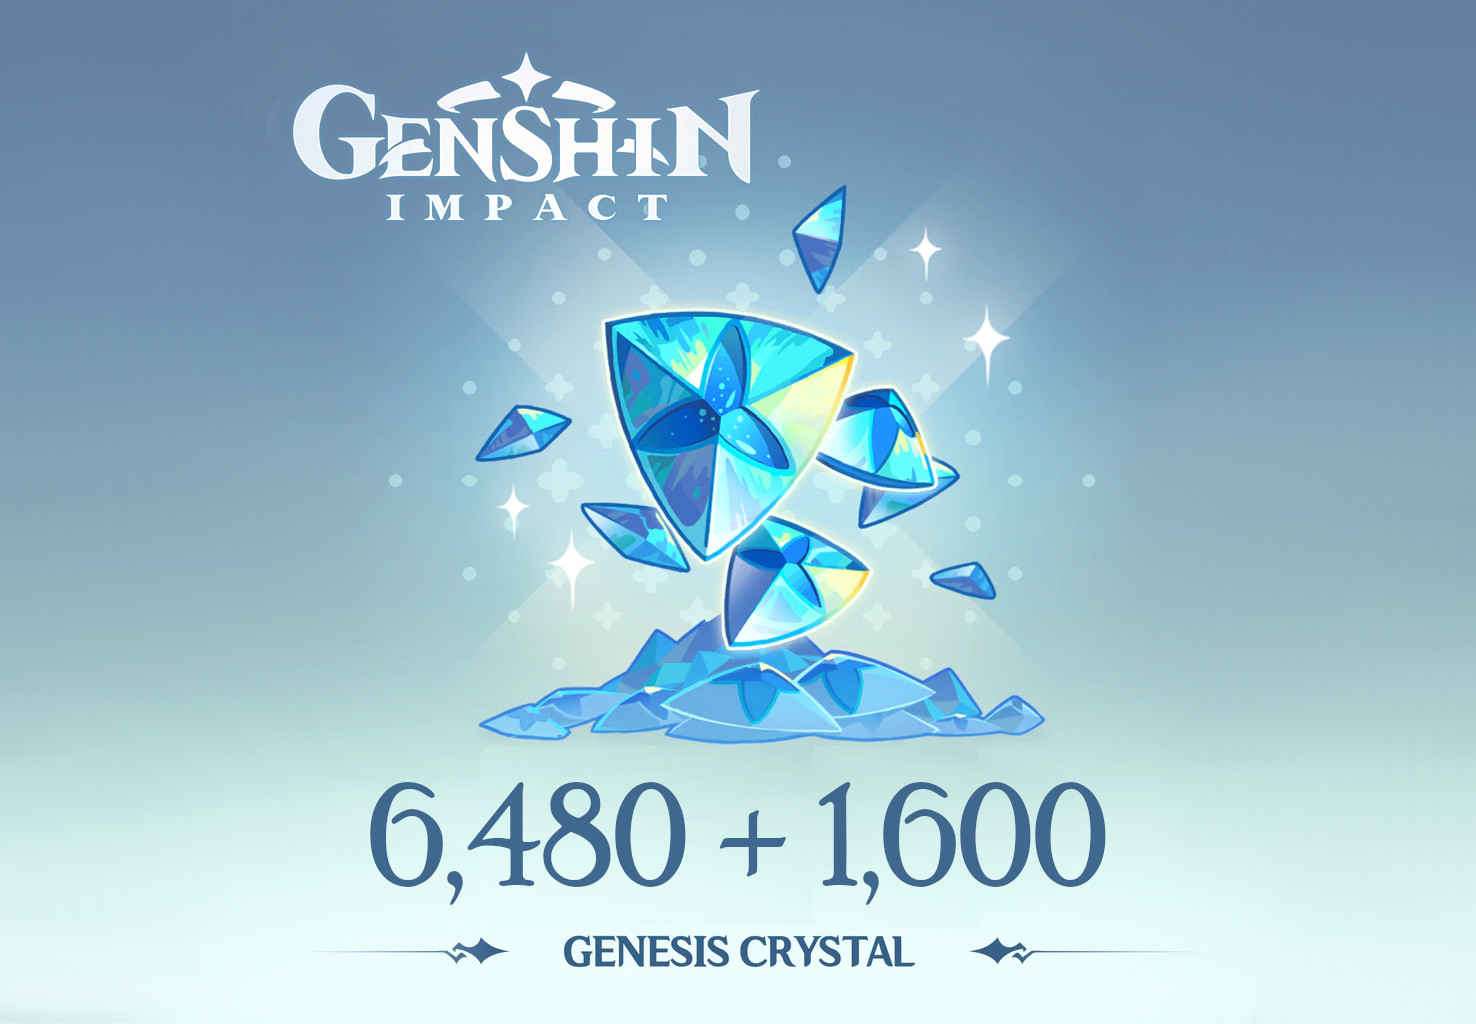 Genshin Impact - 6,480 + 1,600 Genesis Crystals Reidos Voucher [USD 107.29]